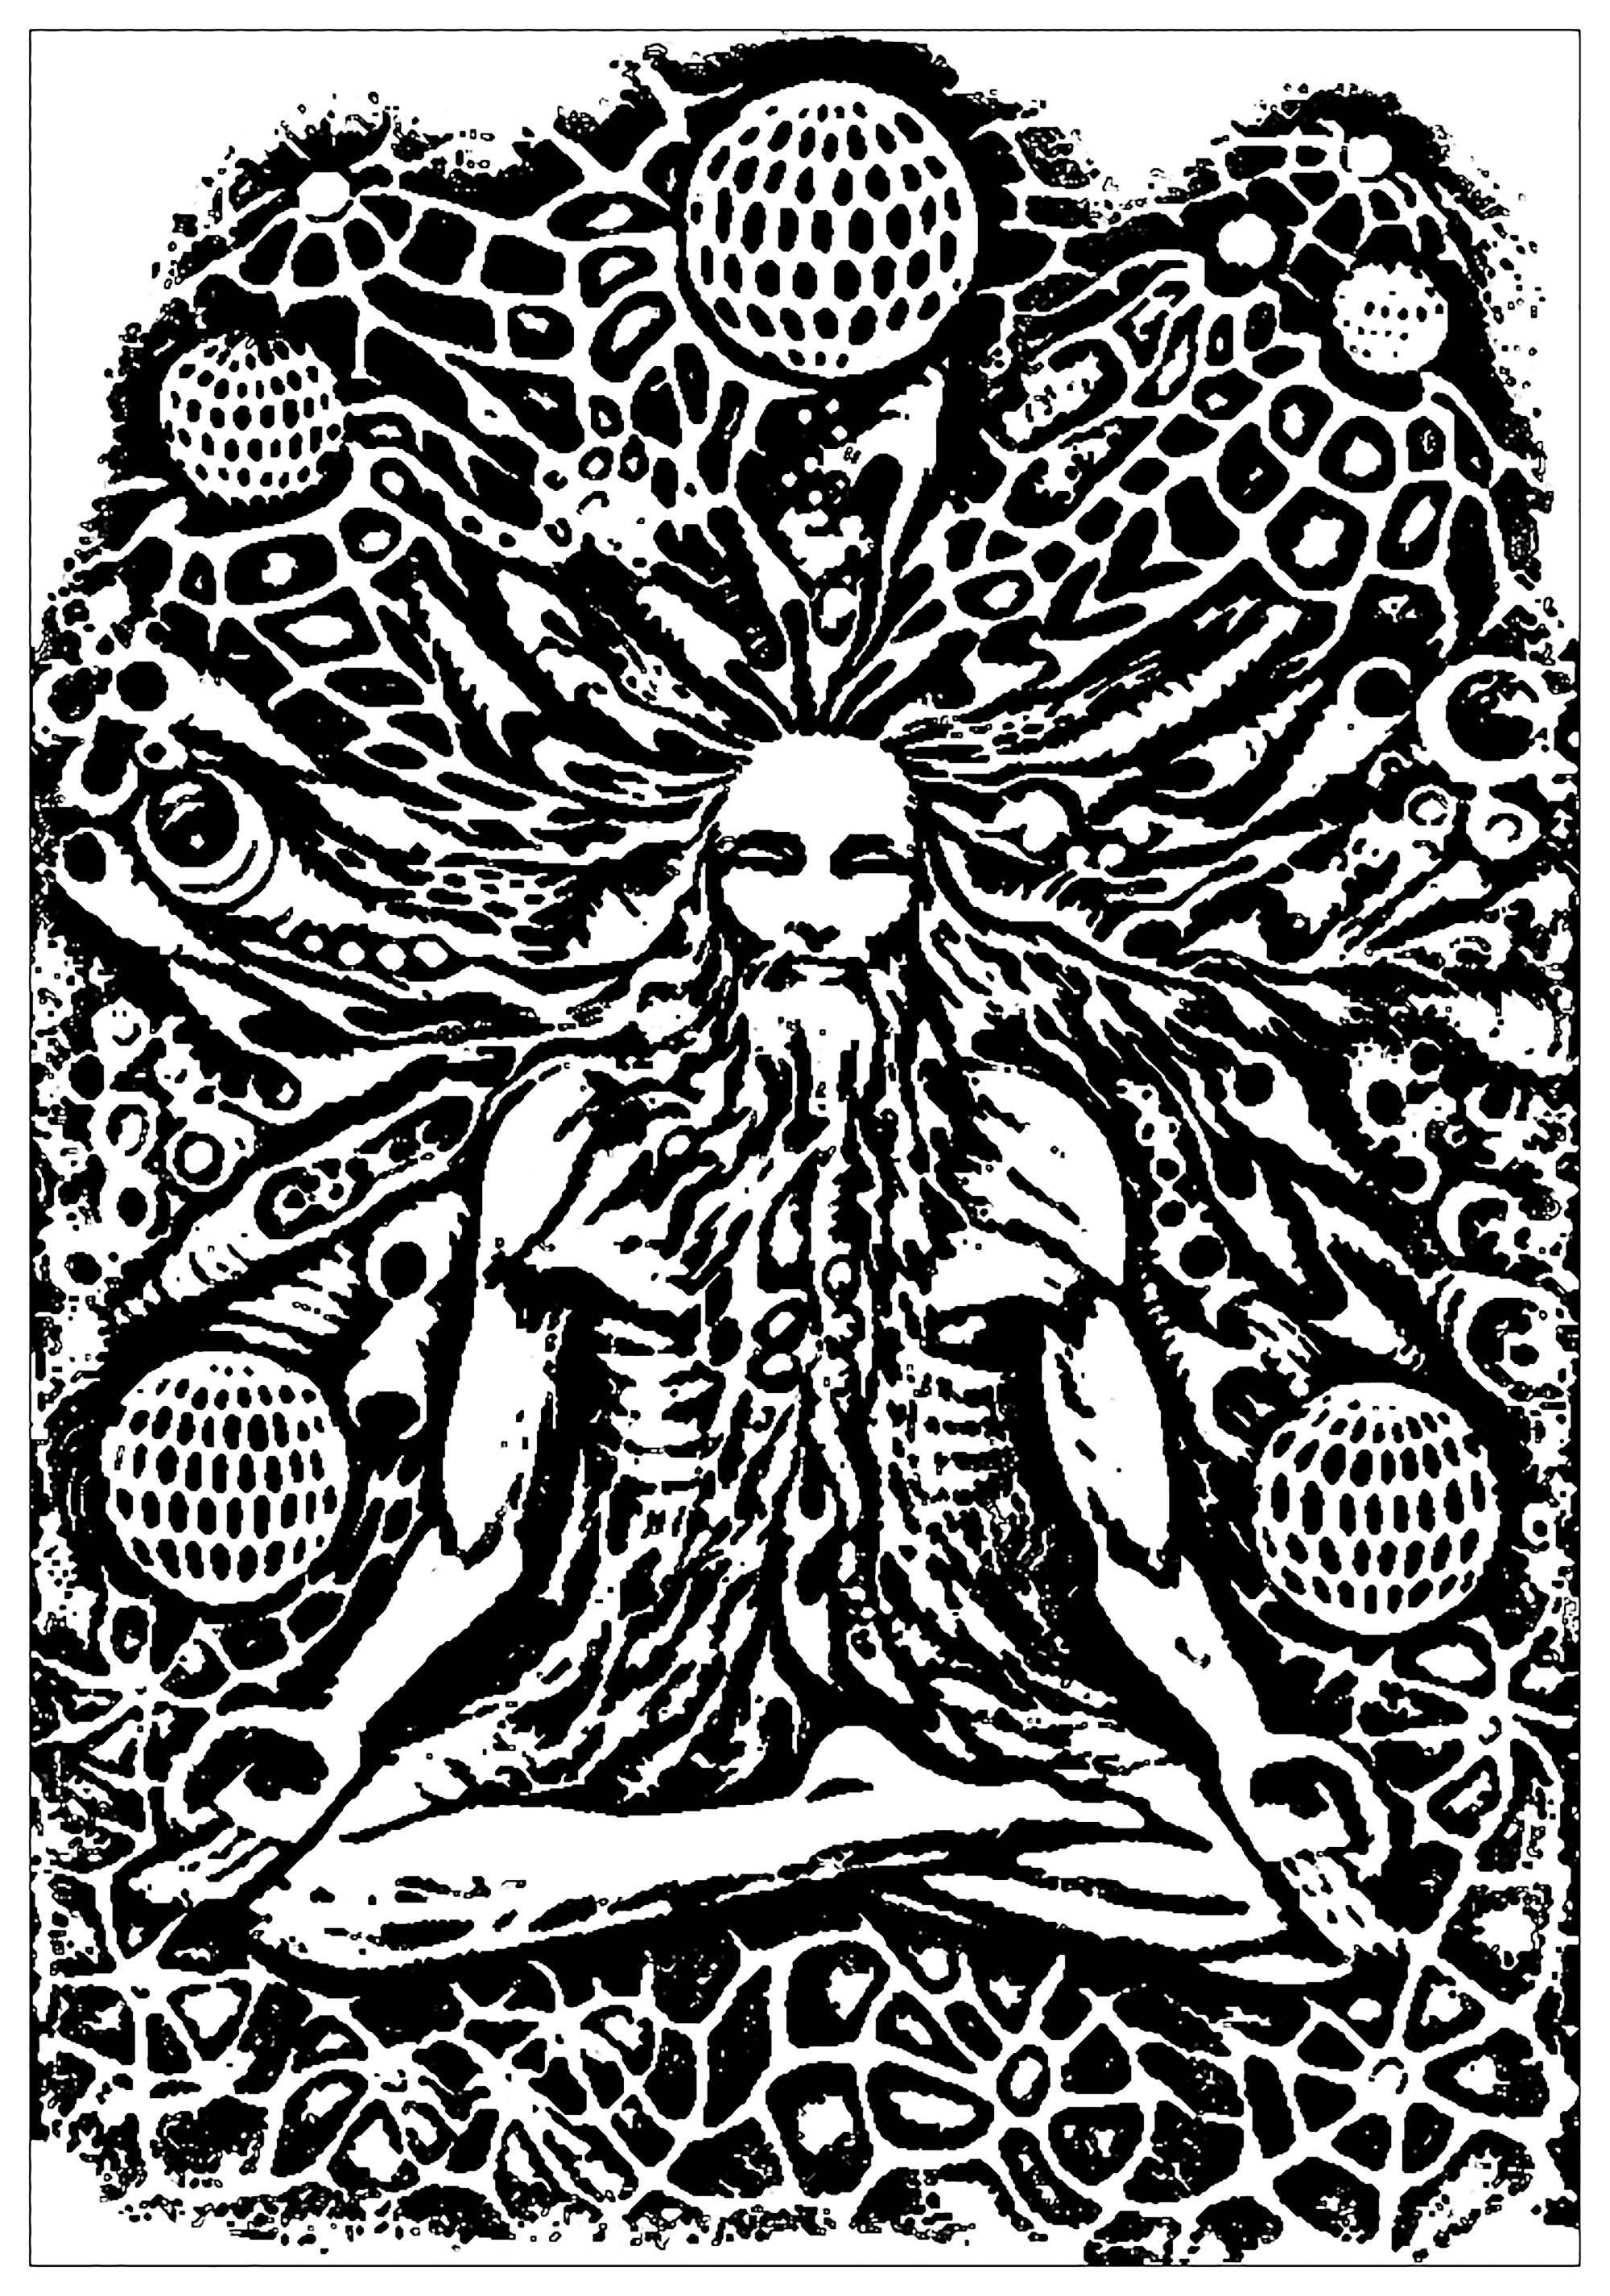 Vieux moine en pleine méditation, avec arrière plan psychédélique